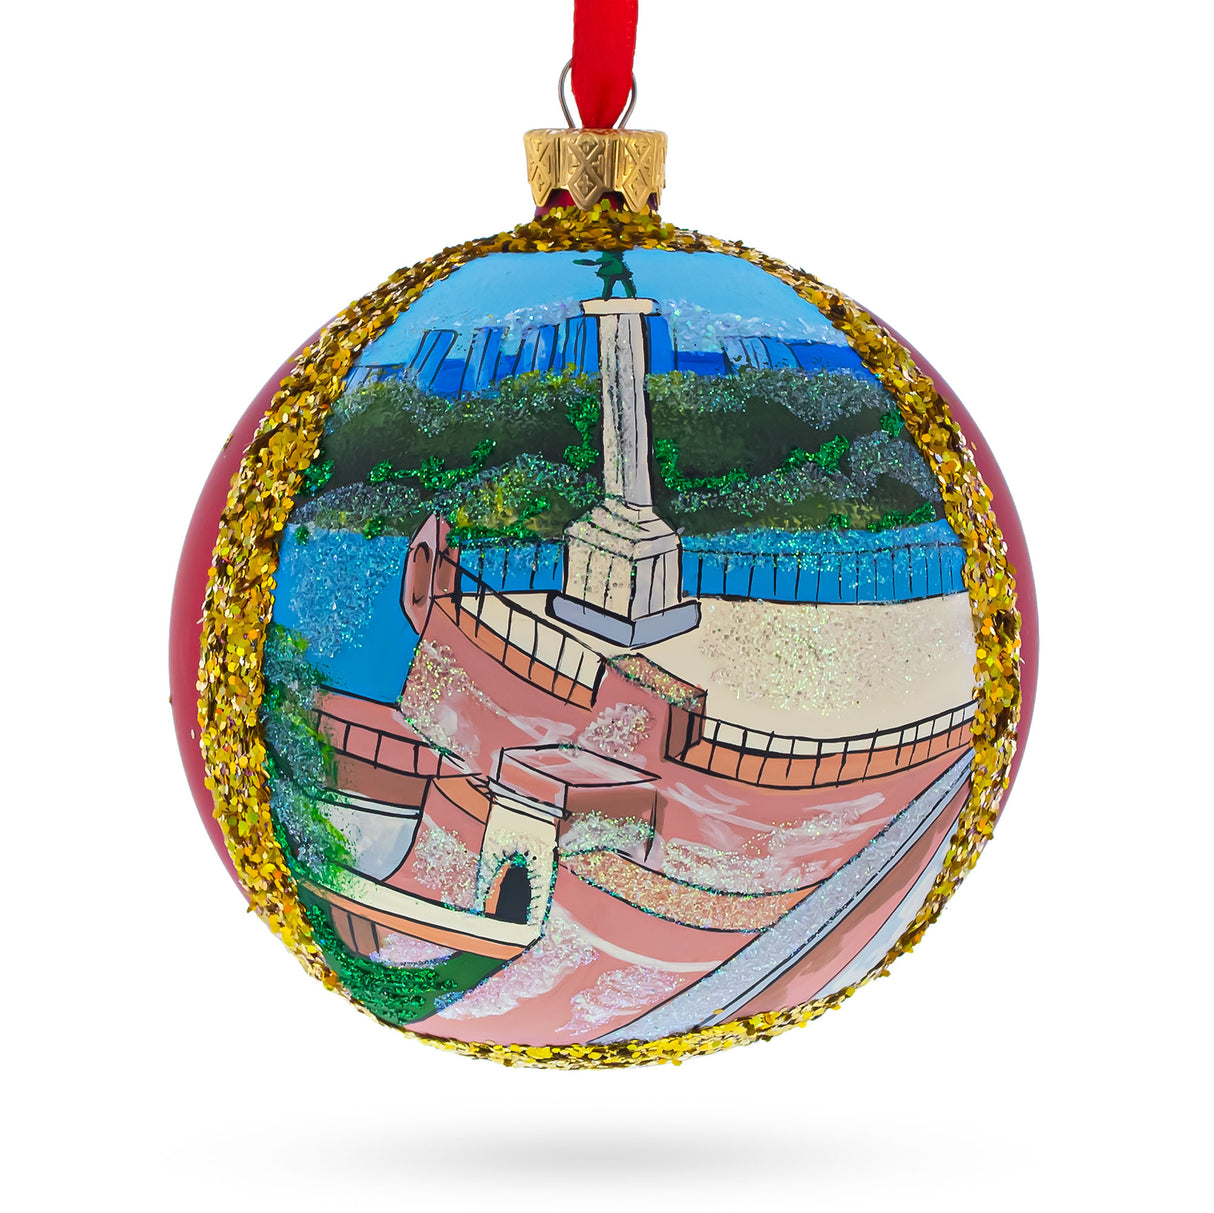 The Belgrade Fortress, Belgrade, Serbia Glass Ball Christmas Ornament 4 Inches in Multi color, Round shape